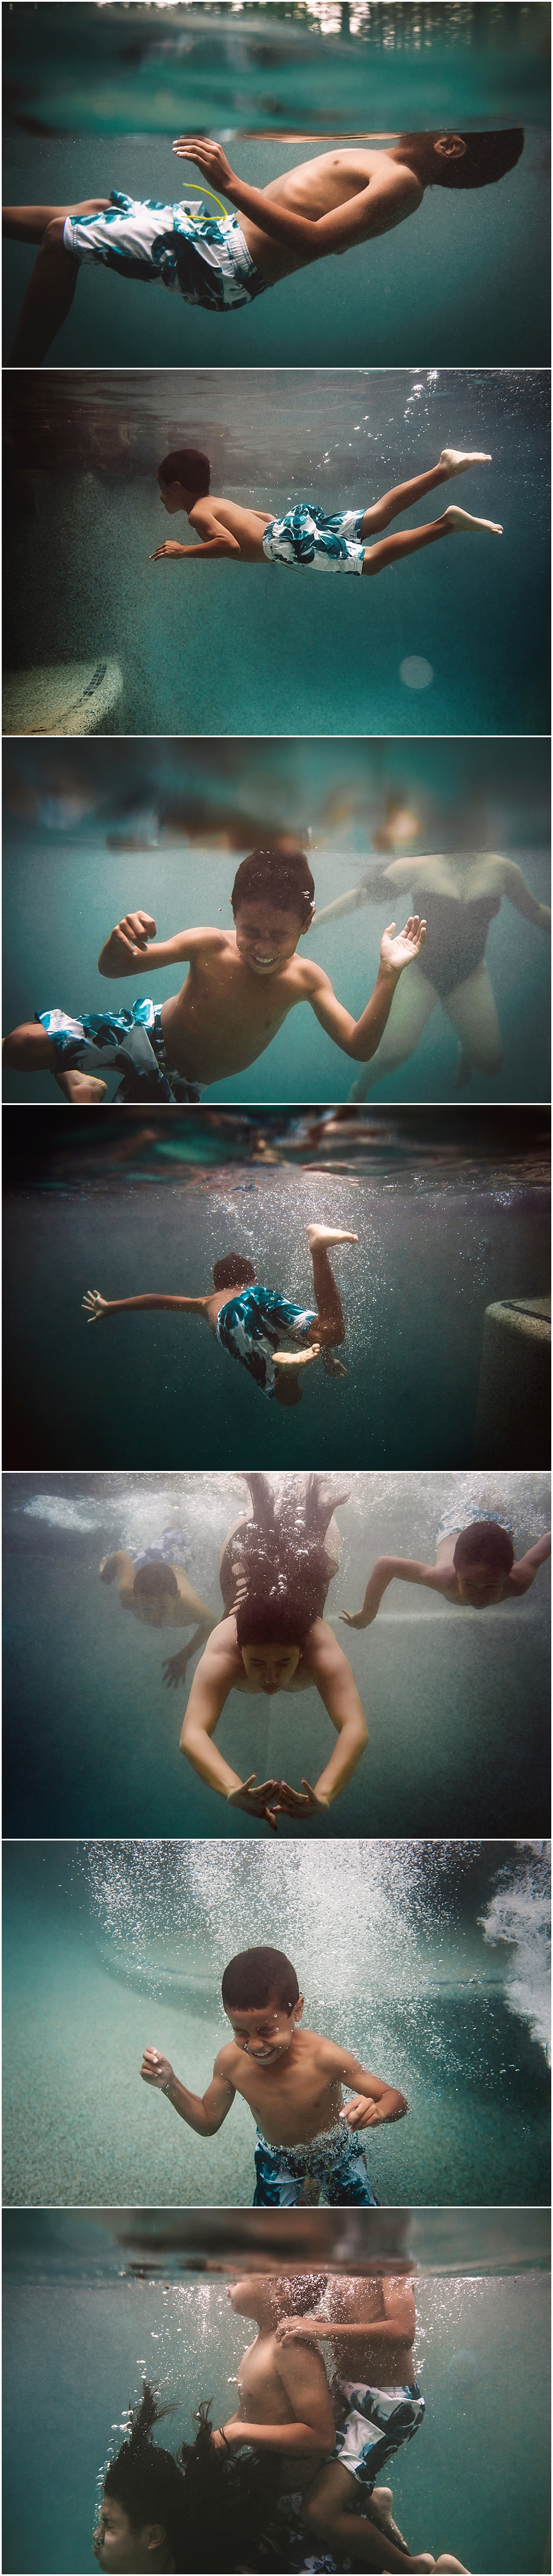 Atlanta Underwater Photographer 1